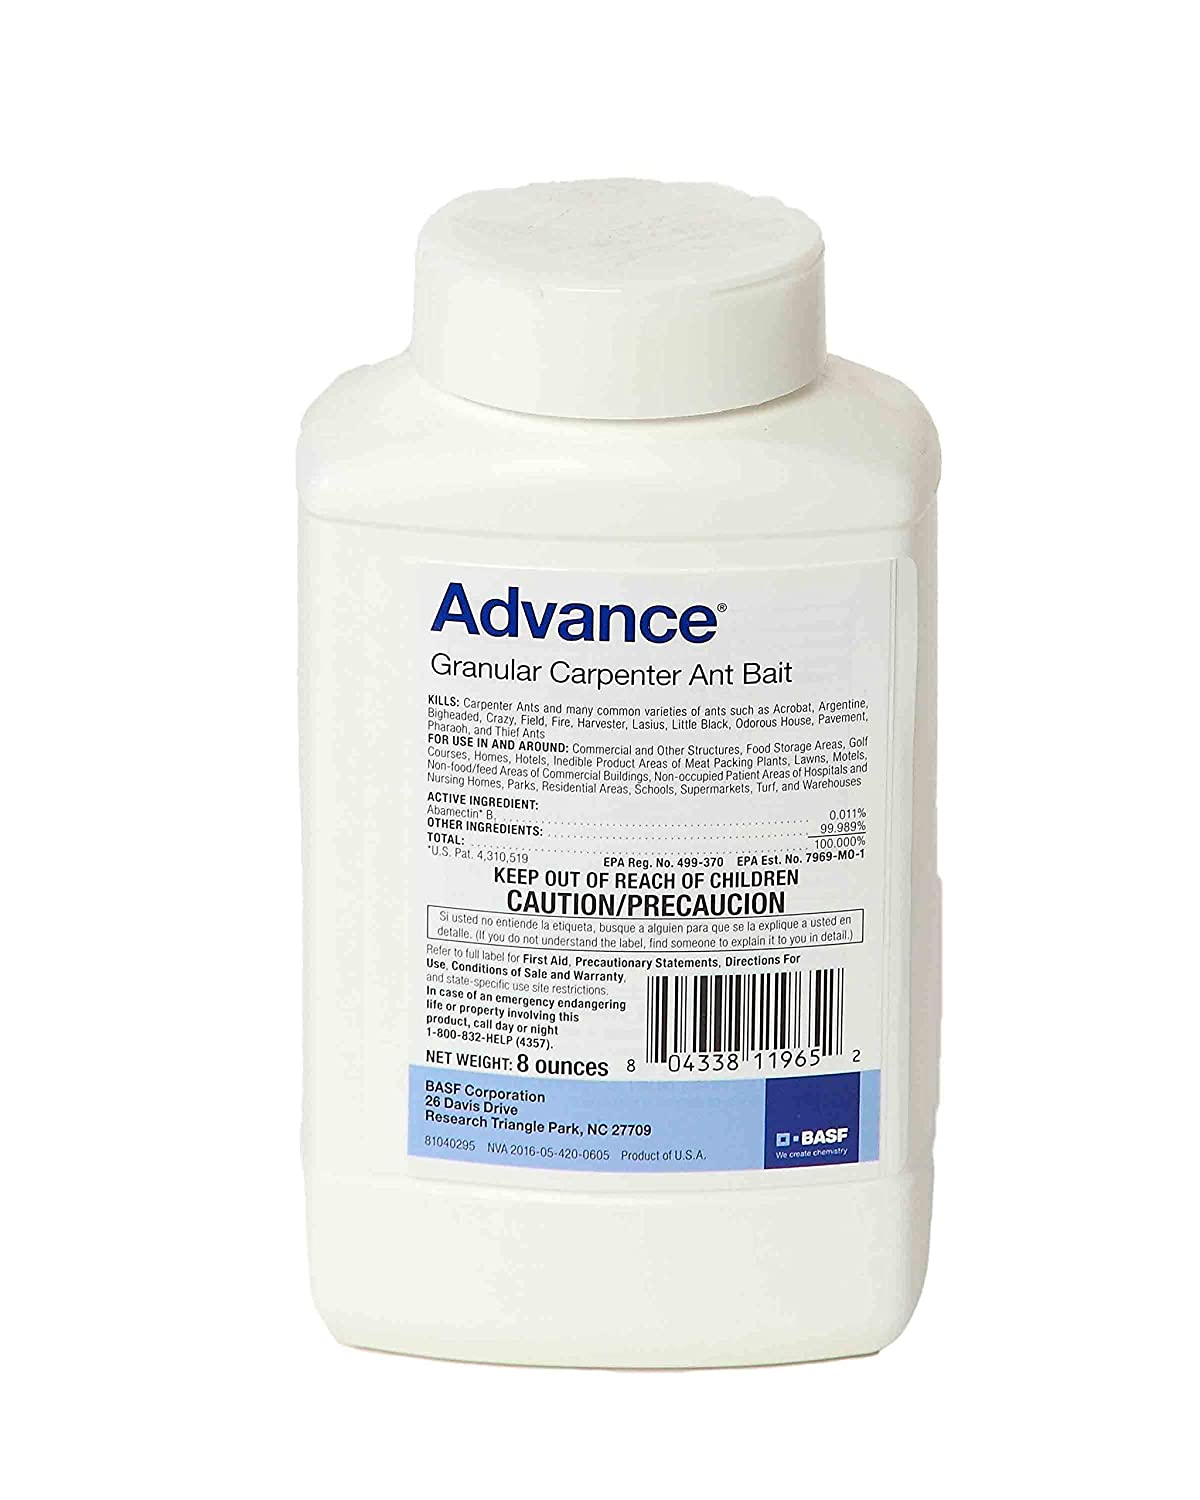 Advance Granular Carpenter Ant Bait - 1 Bottle (8 oz)